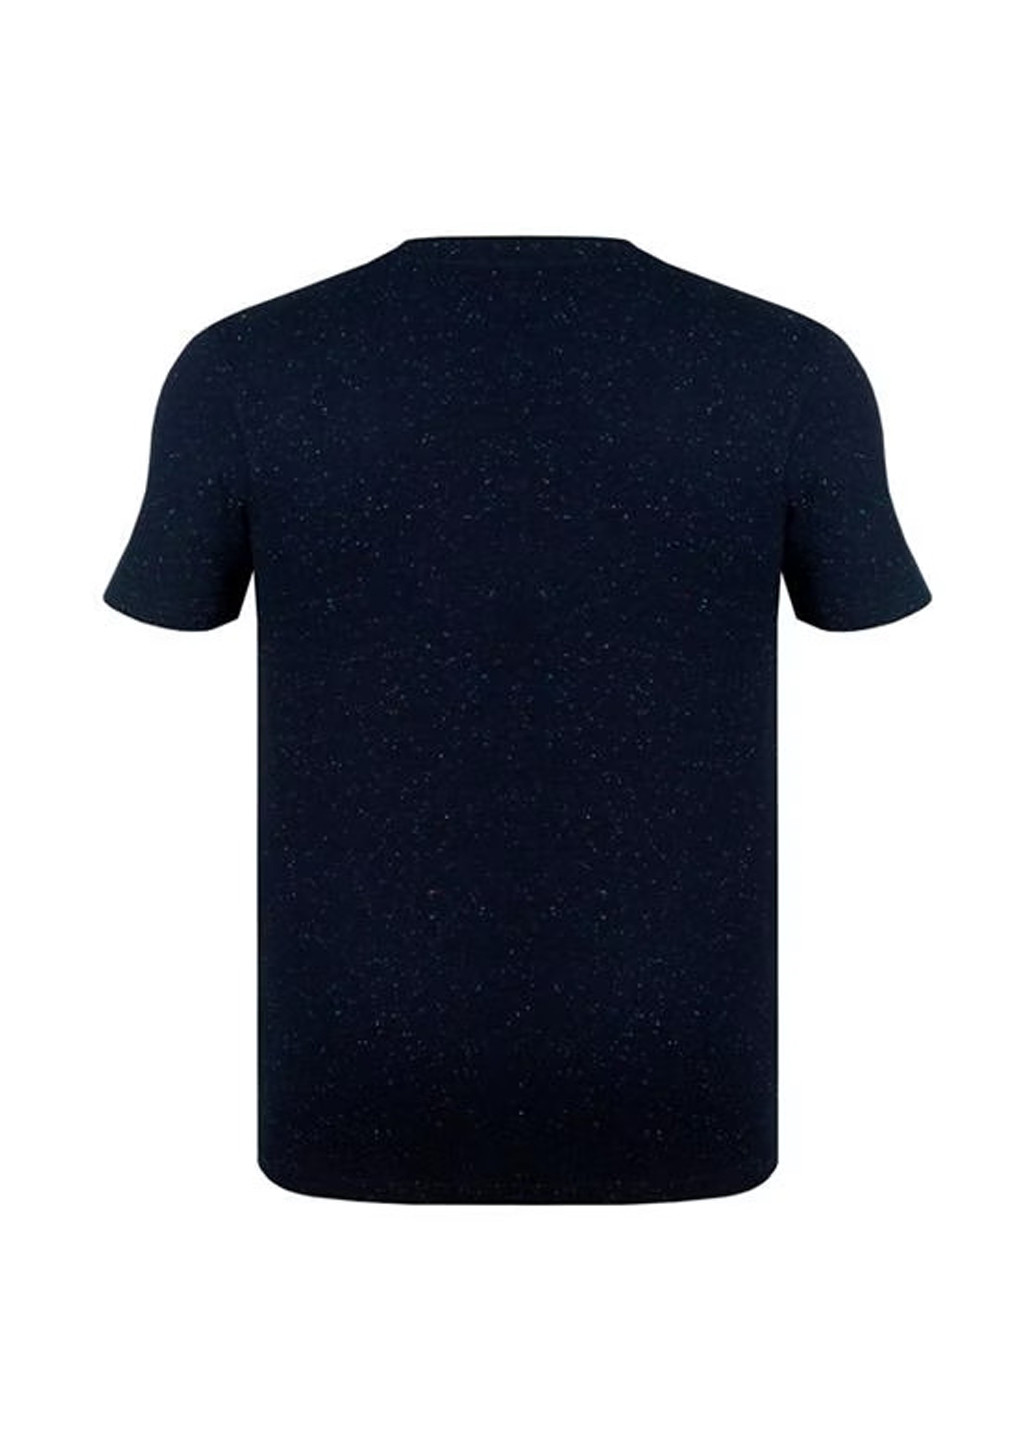 Темно-синяя футболка Soulcal & Co